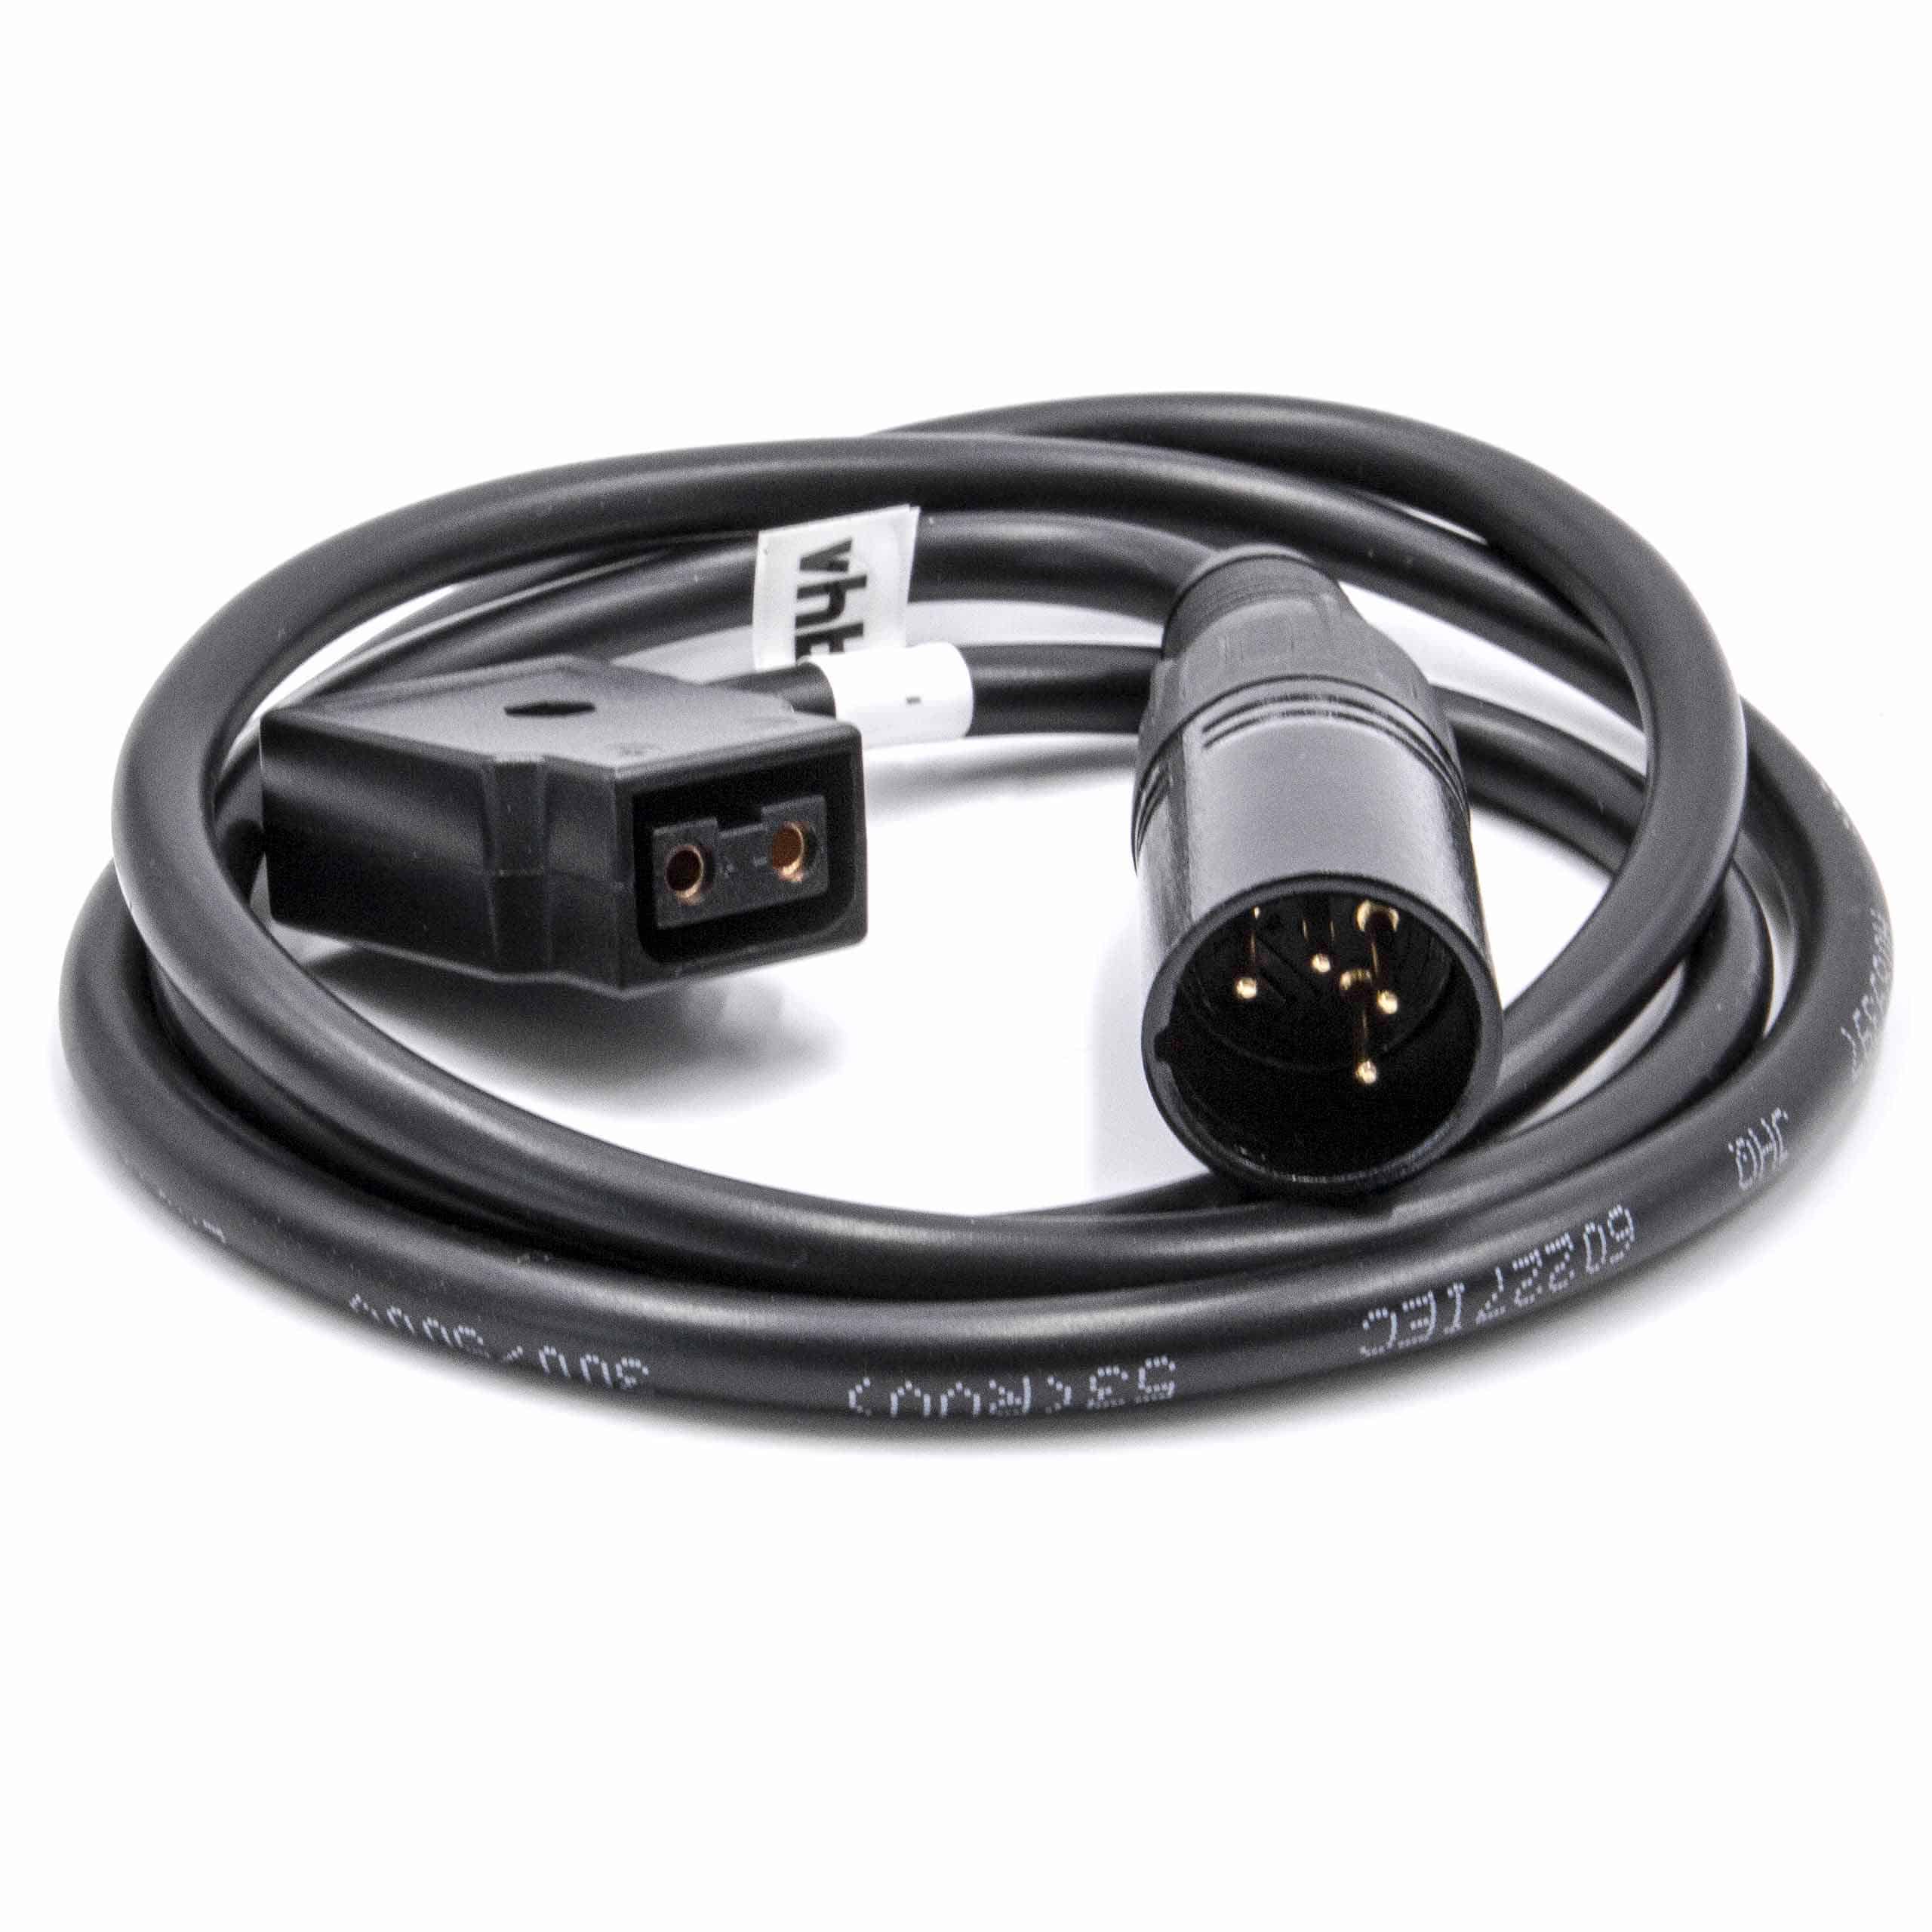 Câble adaptateur D-Tap (f) vers XLR 4 broches (m) pour appareil photo Practilite et autres - 1 m noir